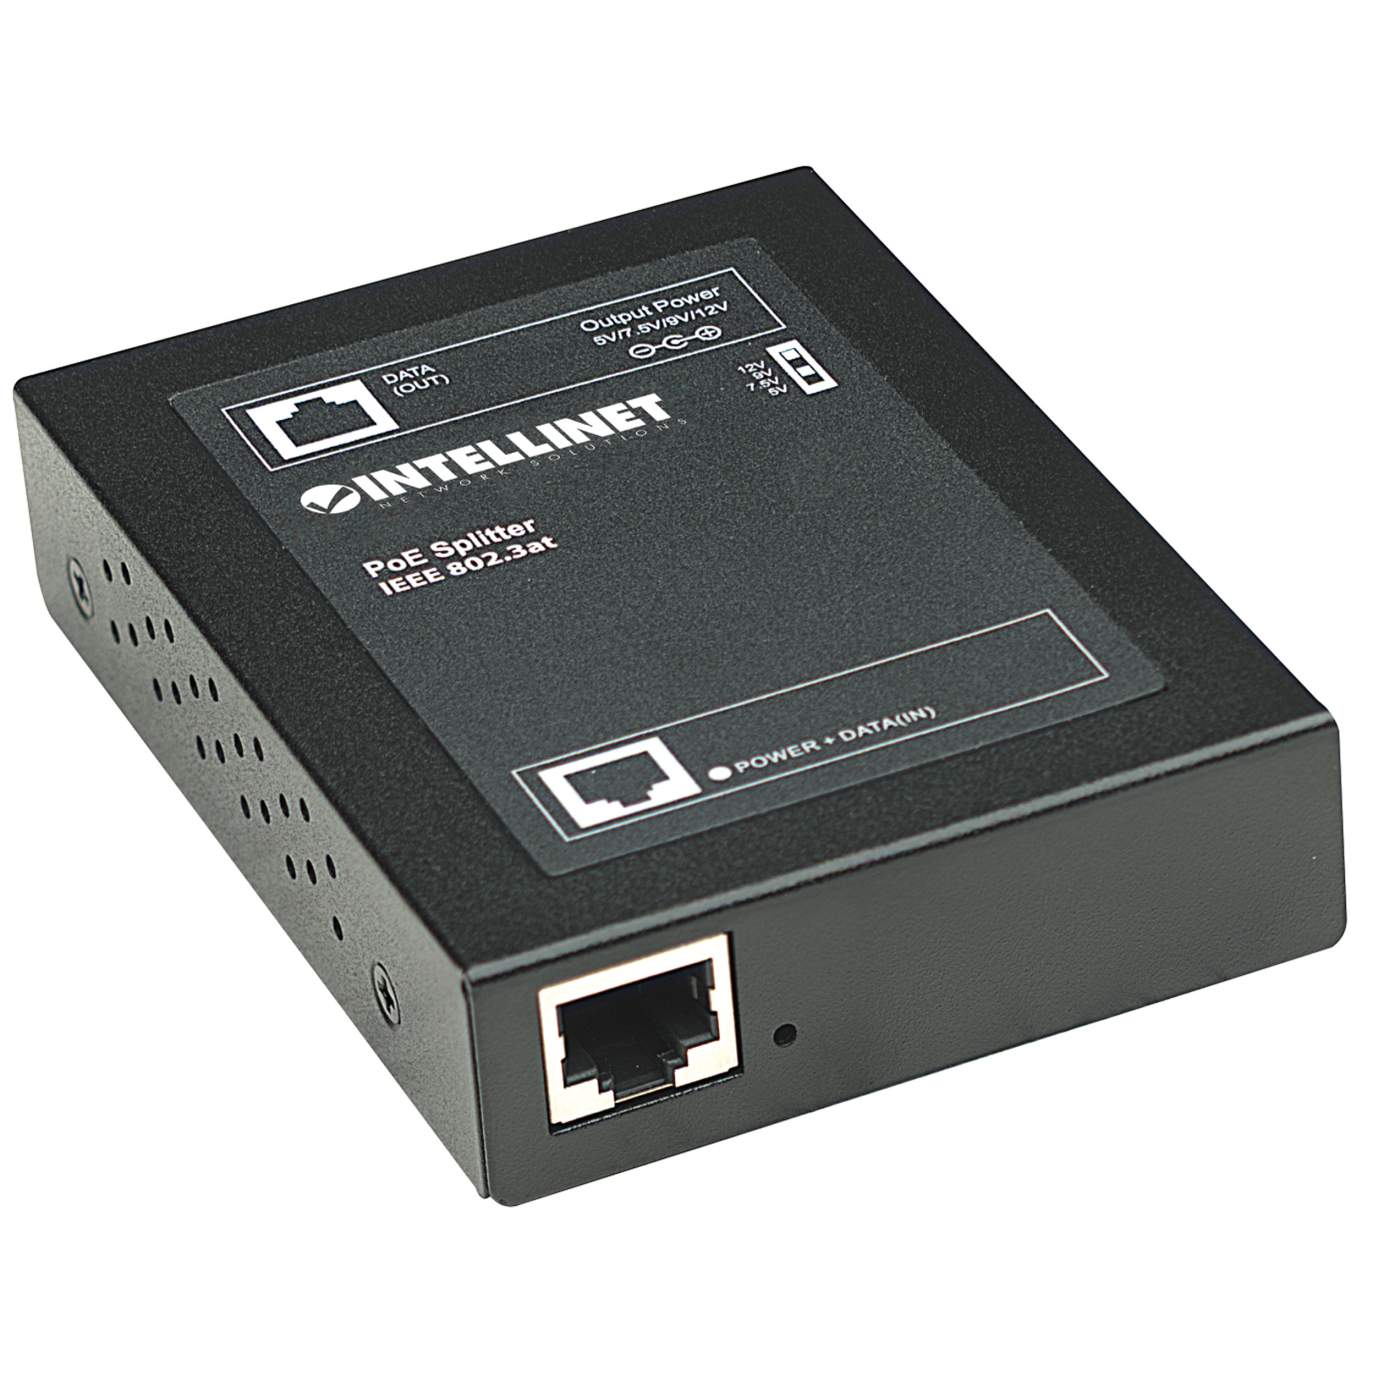 Power over Ethernet (PoE) Injector 1 Port, 48 V DC, IEEE 802.3af Compliant  - SS&Si Dealer Network